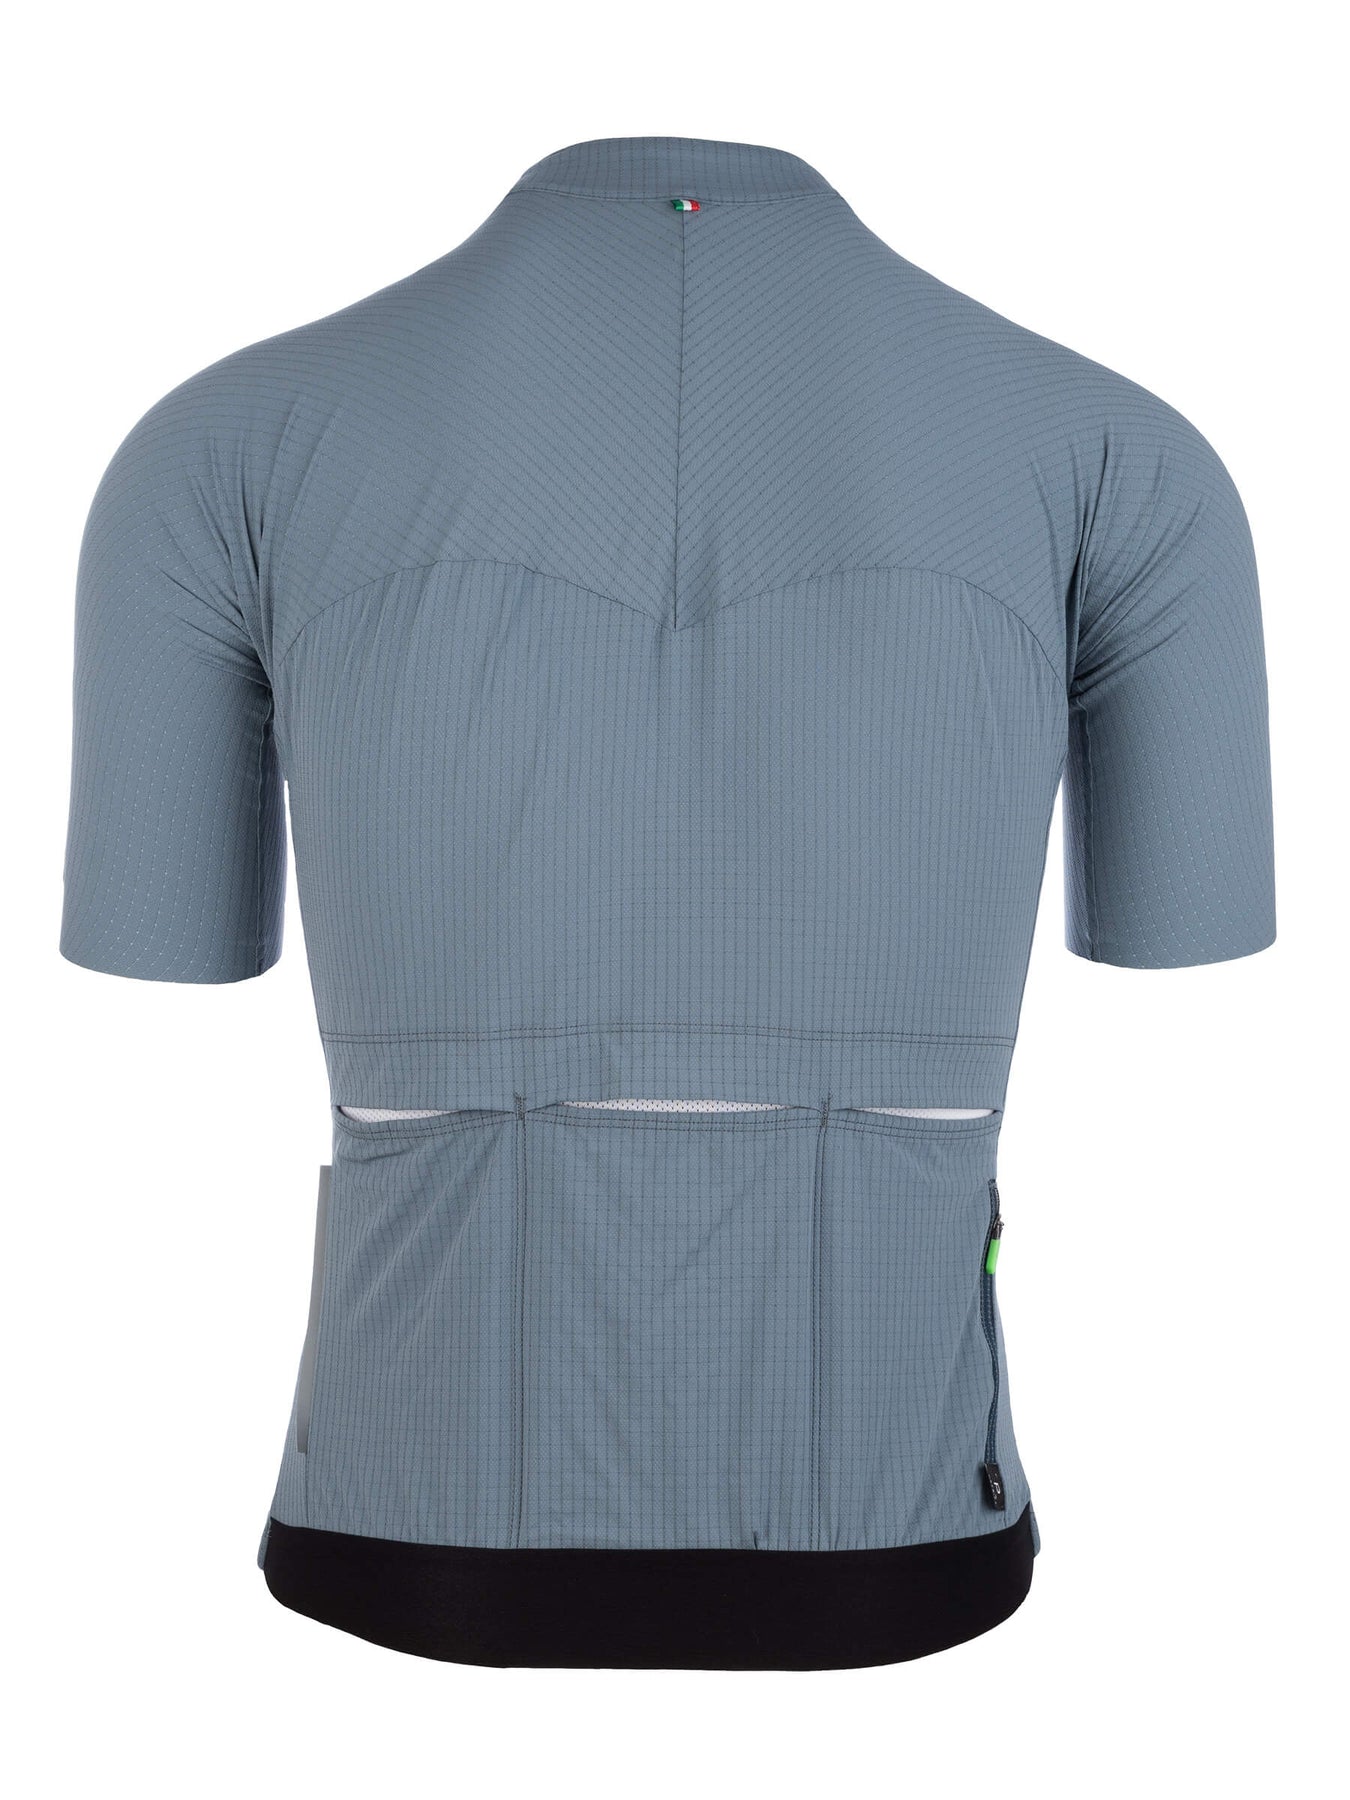 Q36 5 Jersey Short Sleeve L1 Pinstripe X Roadkit